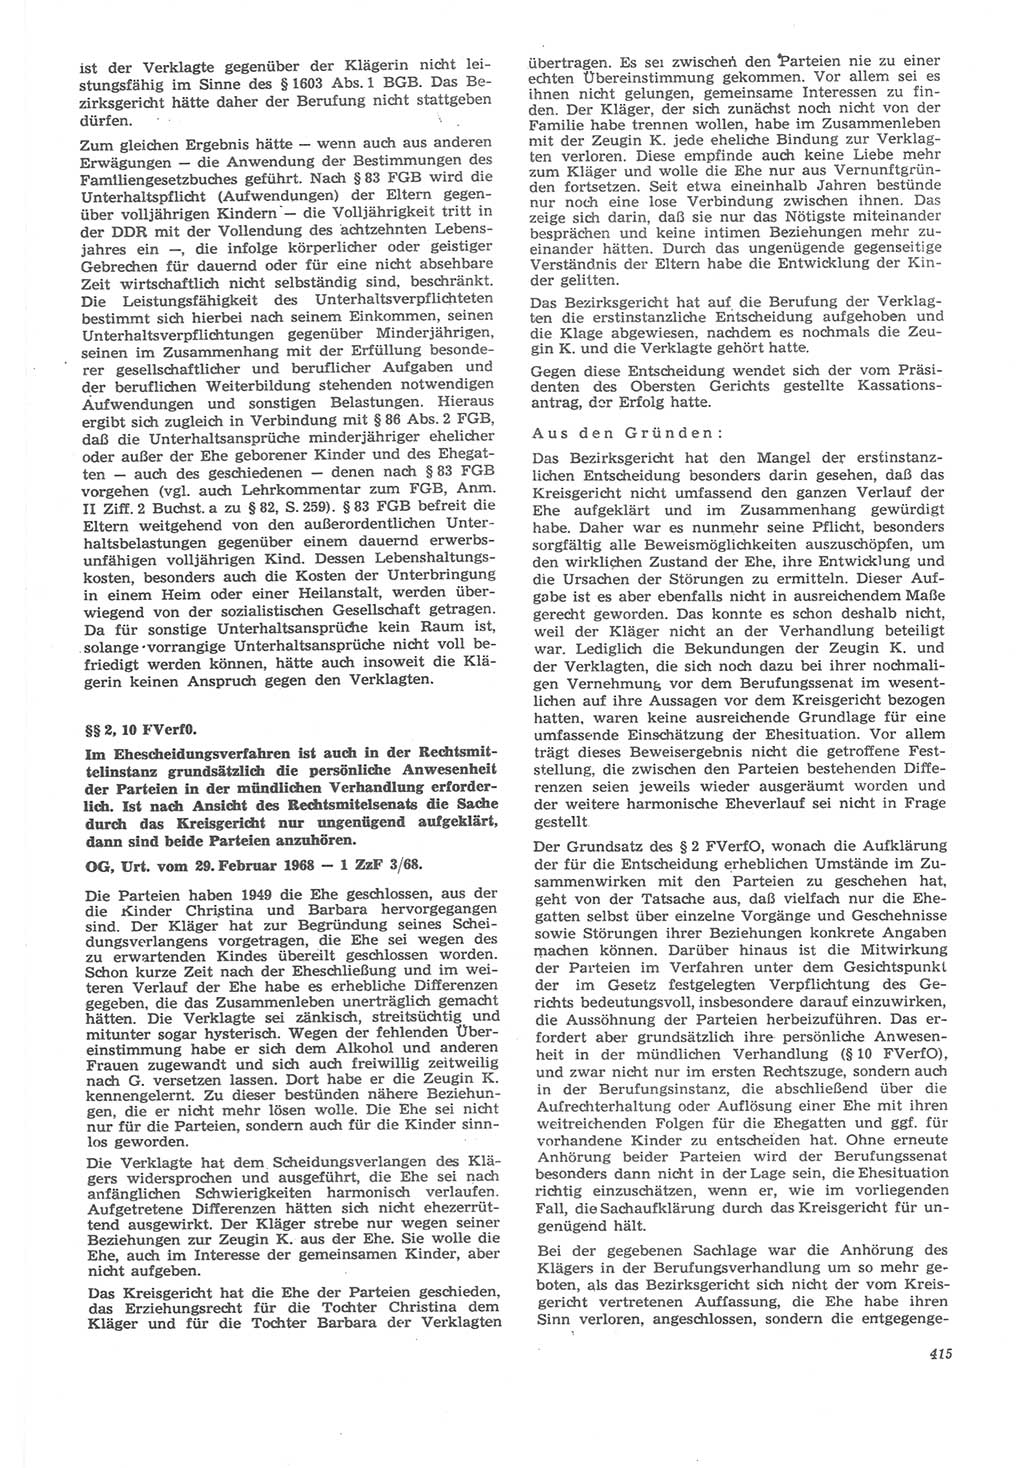 Neue Justiz (NJ), Zeitschrift für Recht und Rechtswissenschaft [Deutsche Demokratische Republik (DDR)], 22. Jahrgang 1968, Seite 415 (NJ DDR 1968, S. 415)